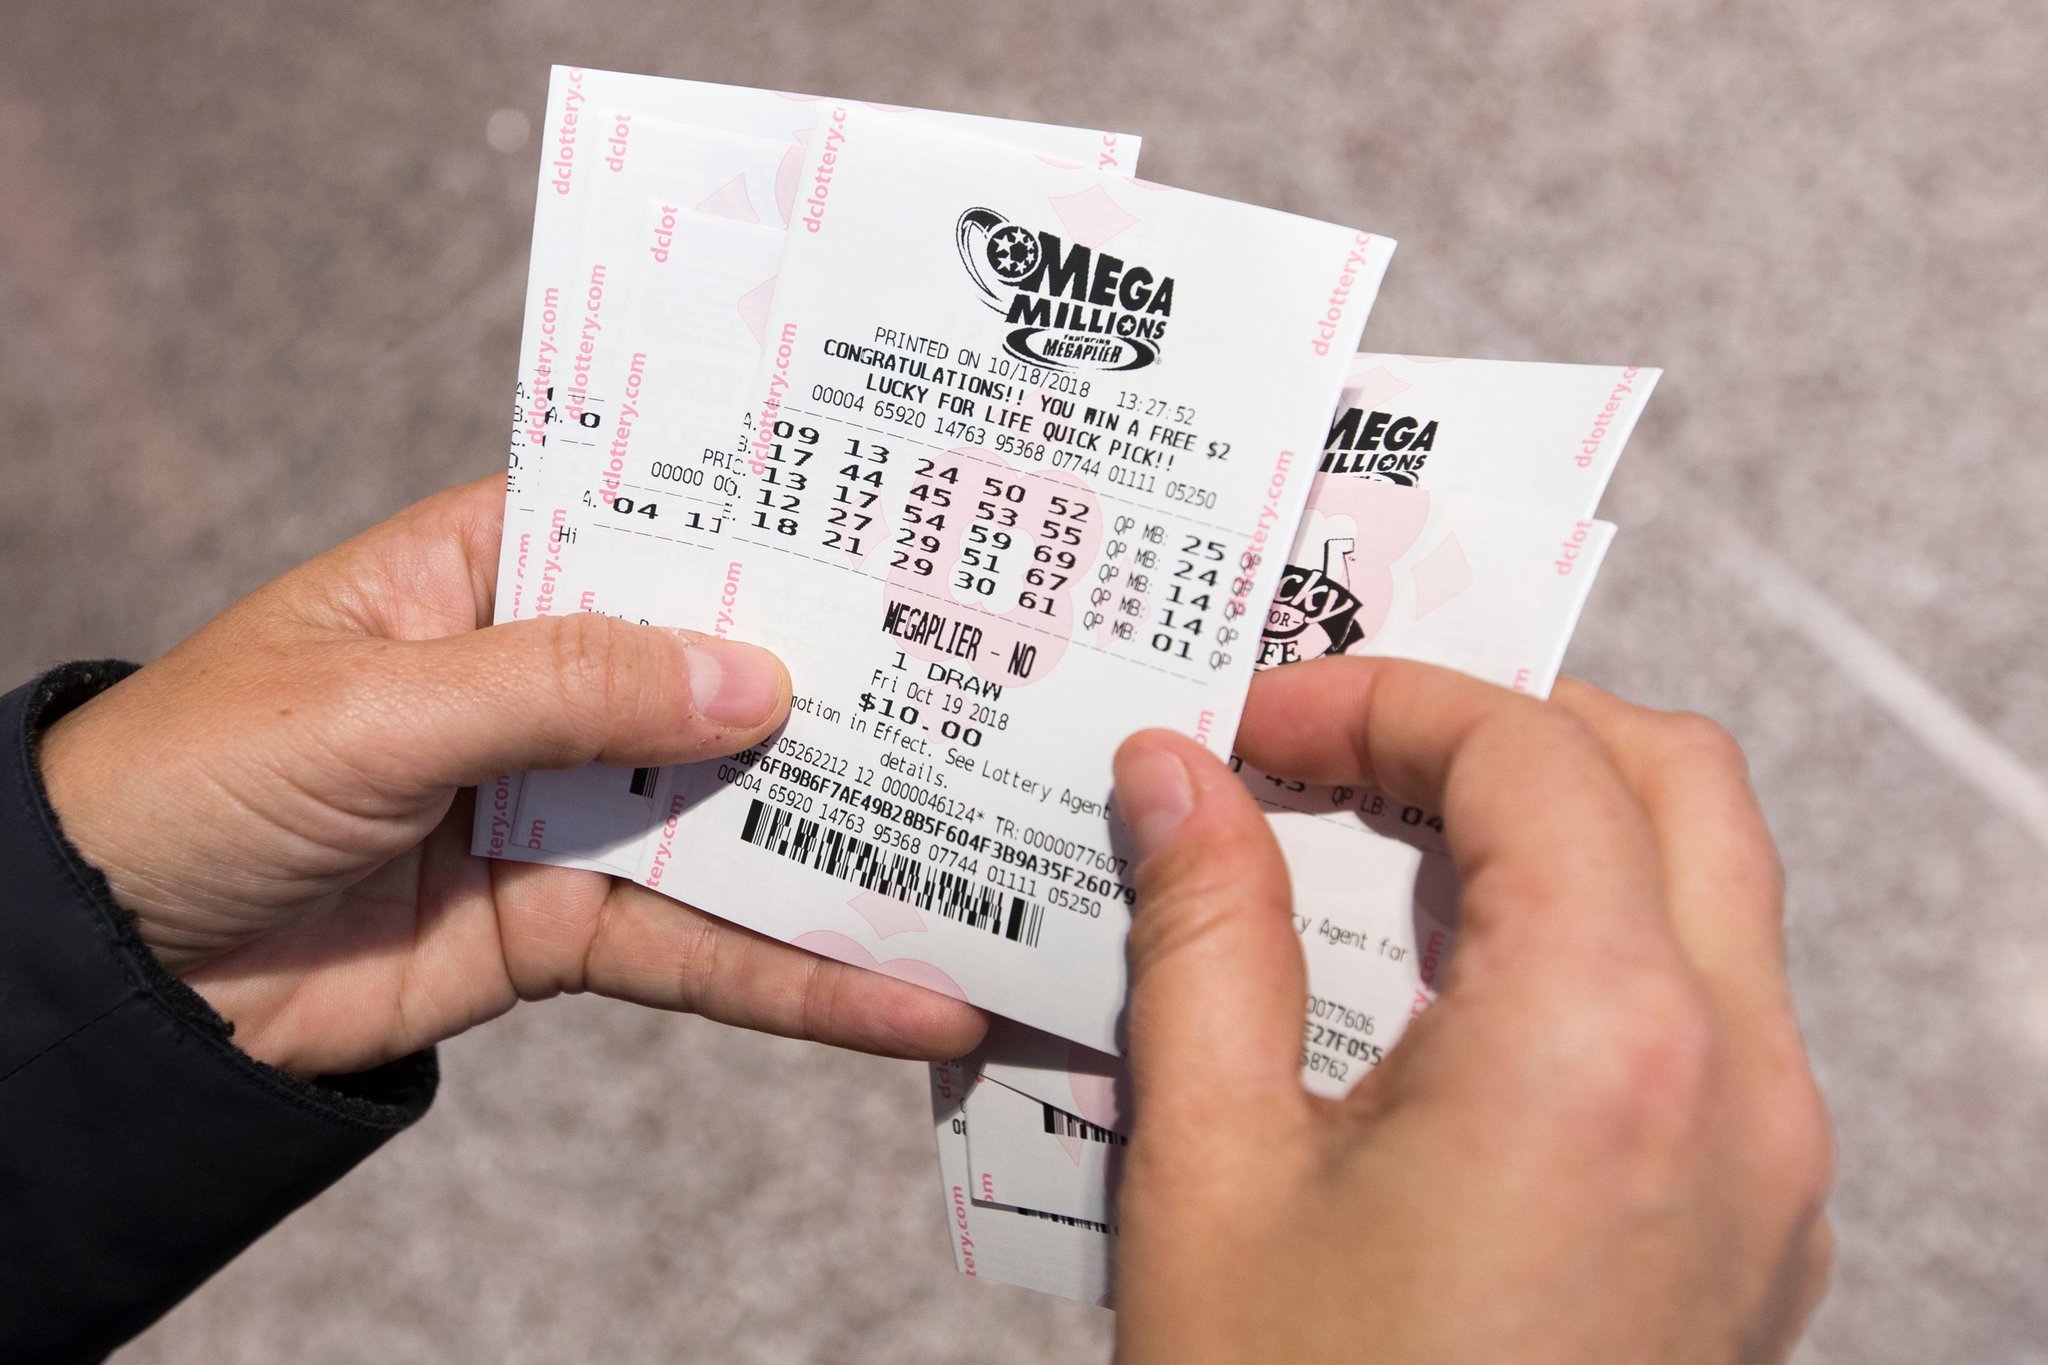 A Mega Millions é uma das maiores loterias do mundo e é comum ela ter prêmios que ultrapassam 1 bilhão de reais